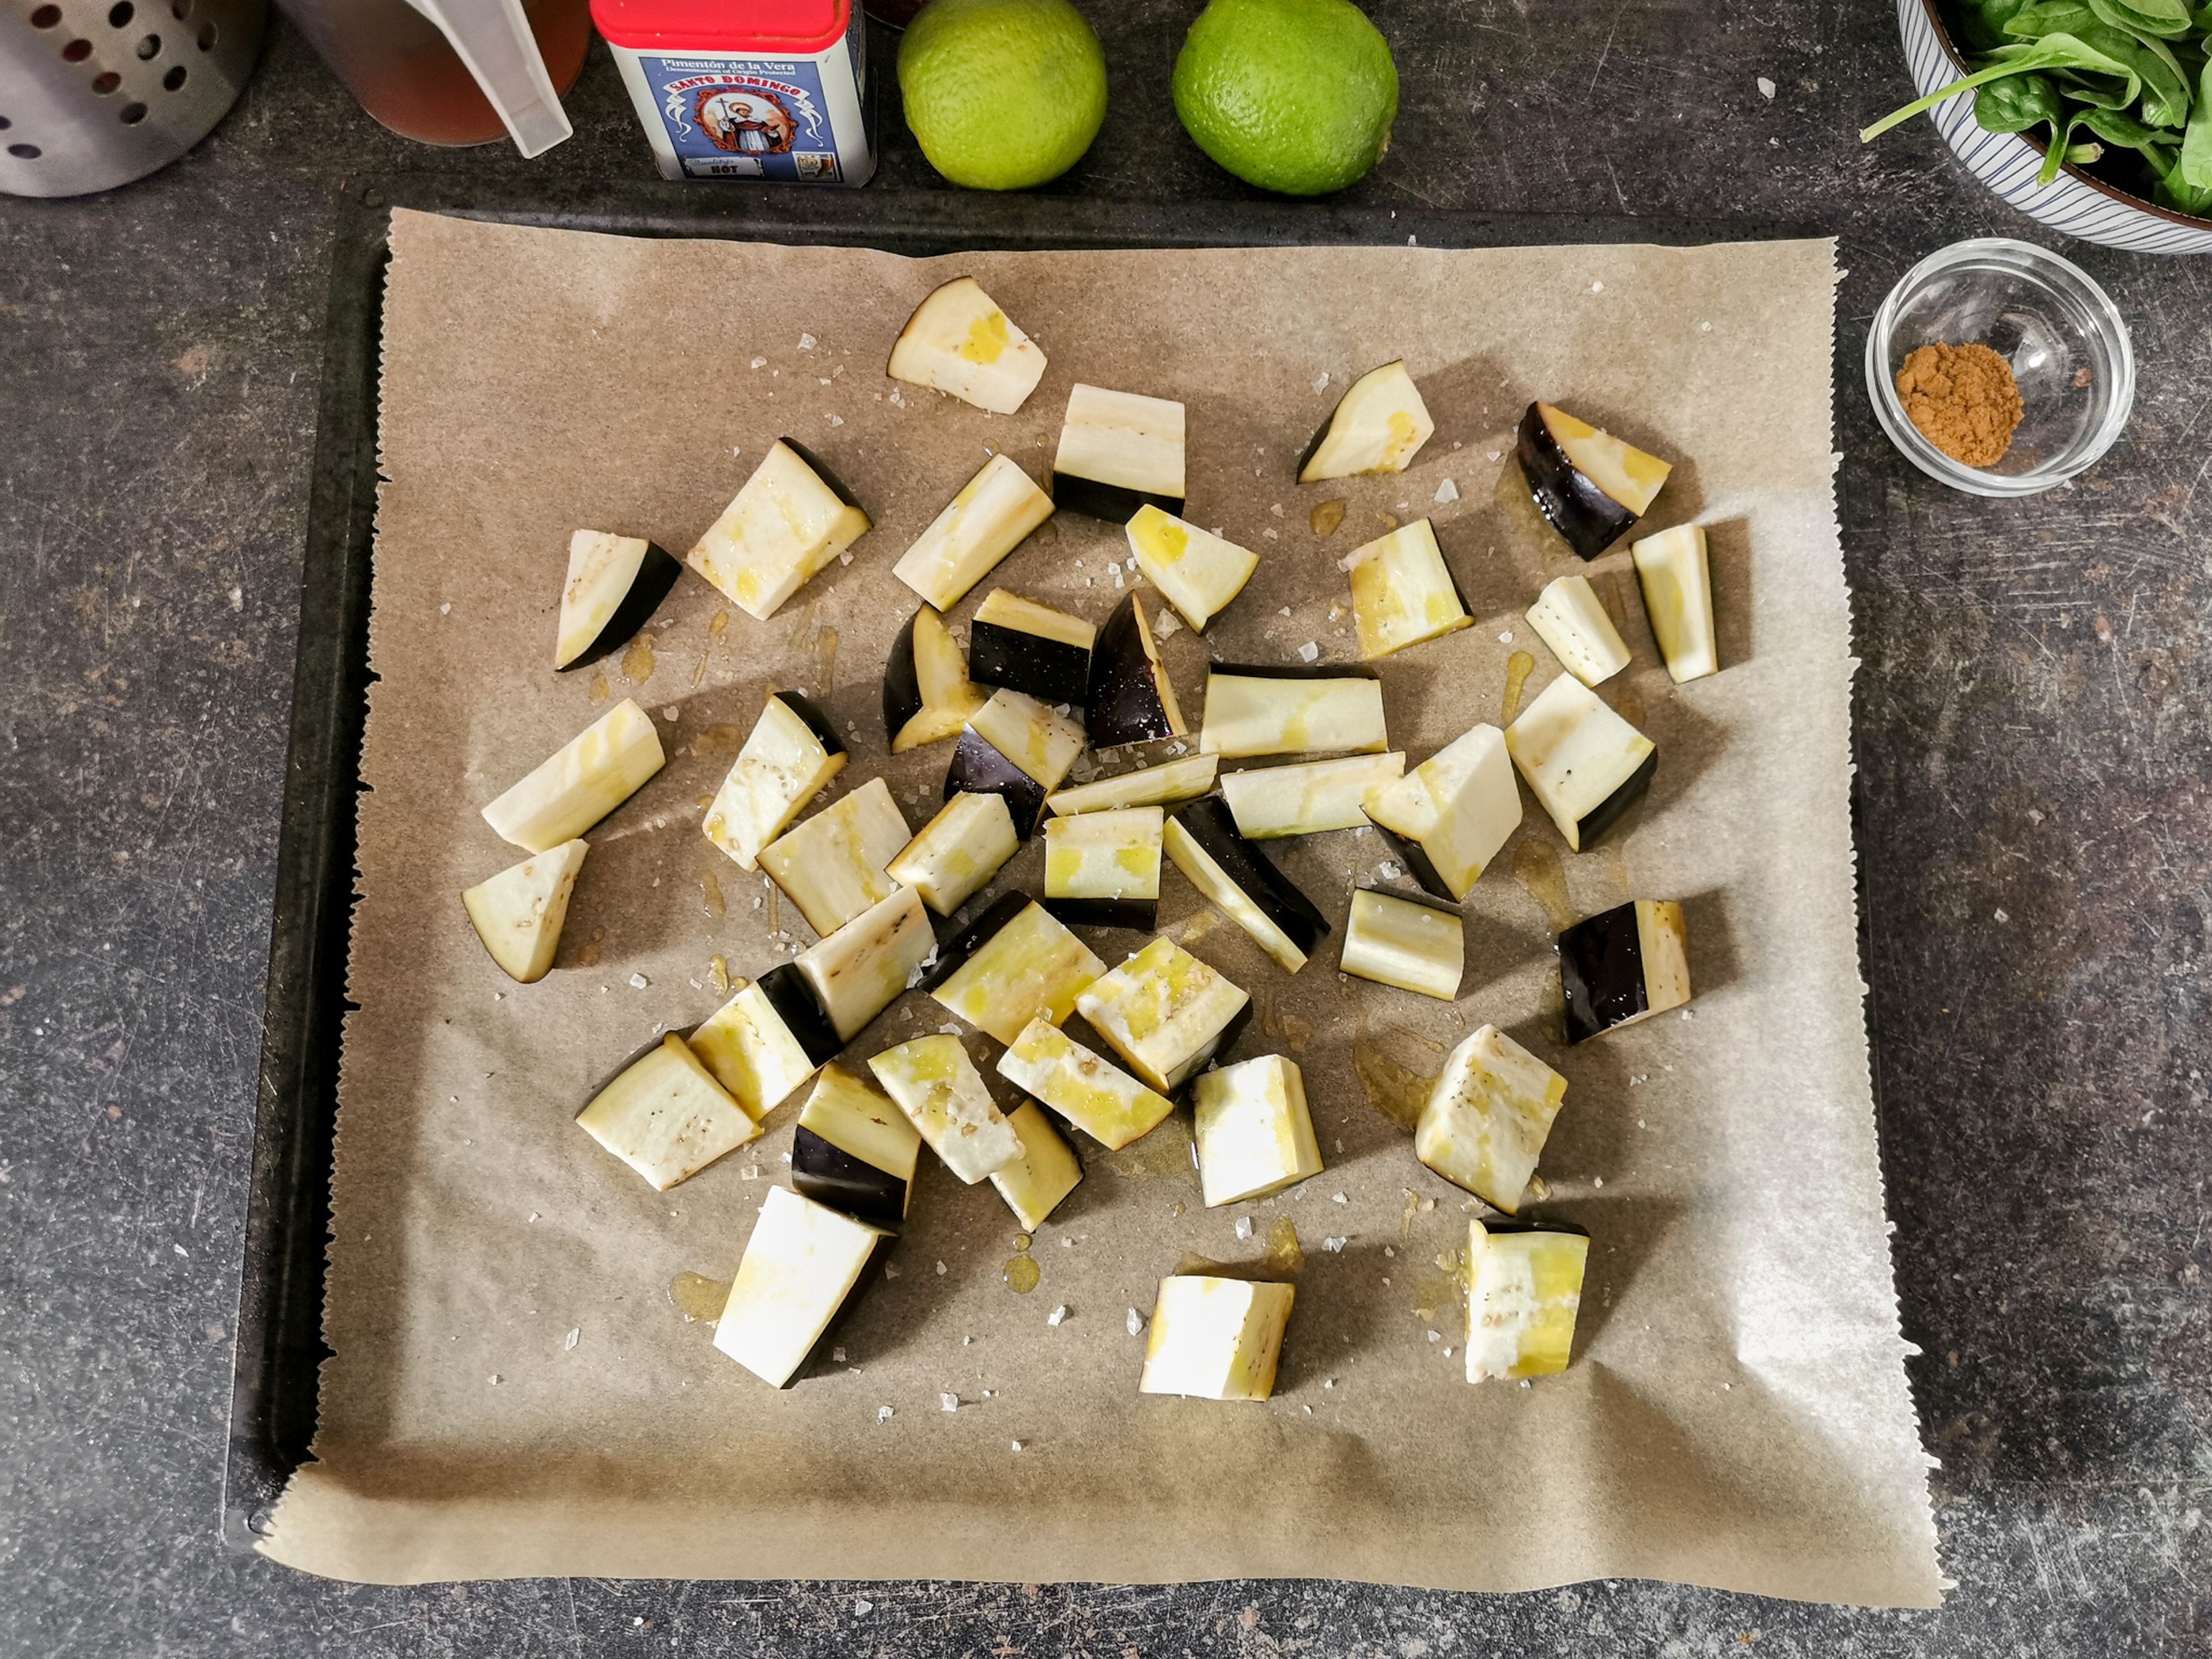 Auberginenwürfel auf ein Backblech geben. Mit Olivenöl beträufeln und mit Salz und Pfeffer würzen. Ca. 15 Min. bei 180°C backen.